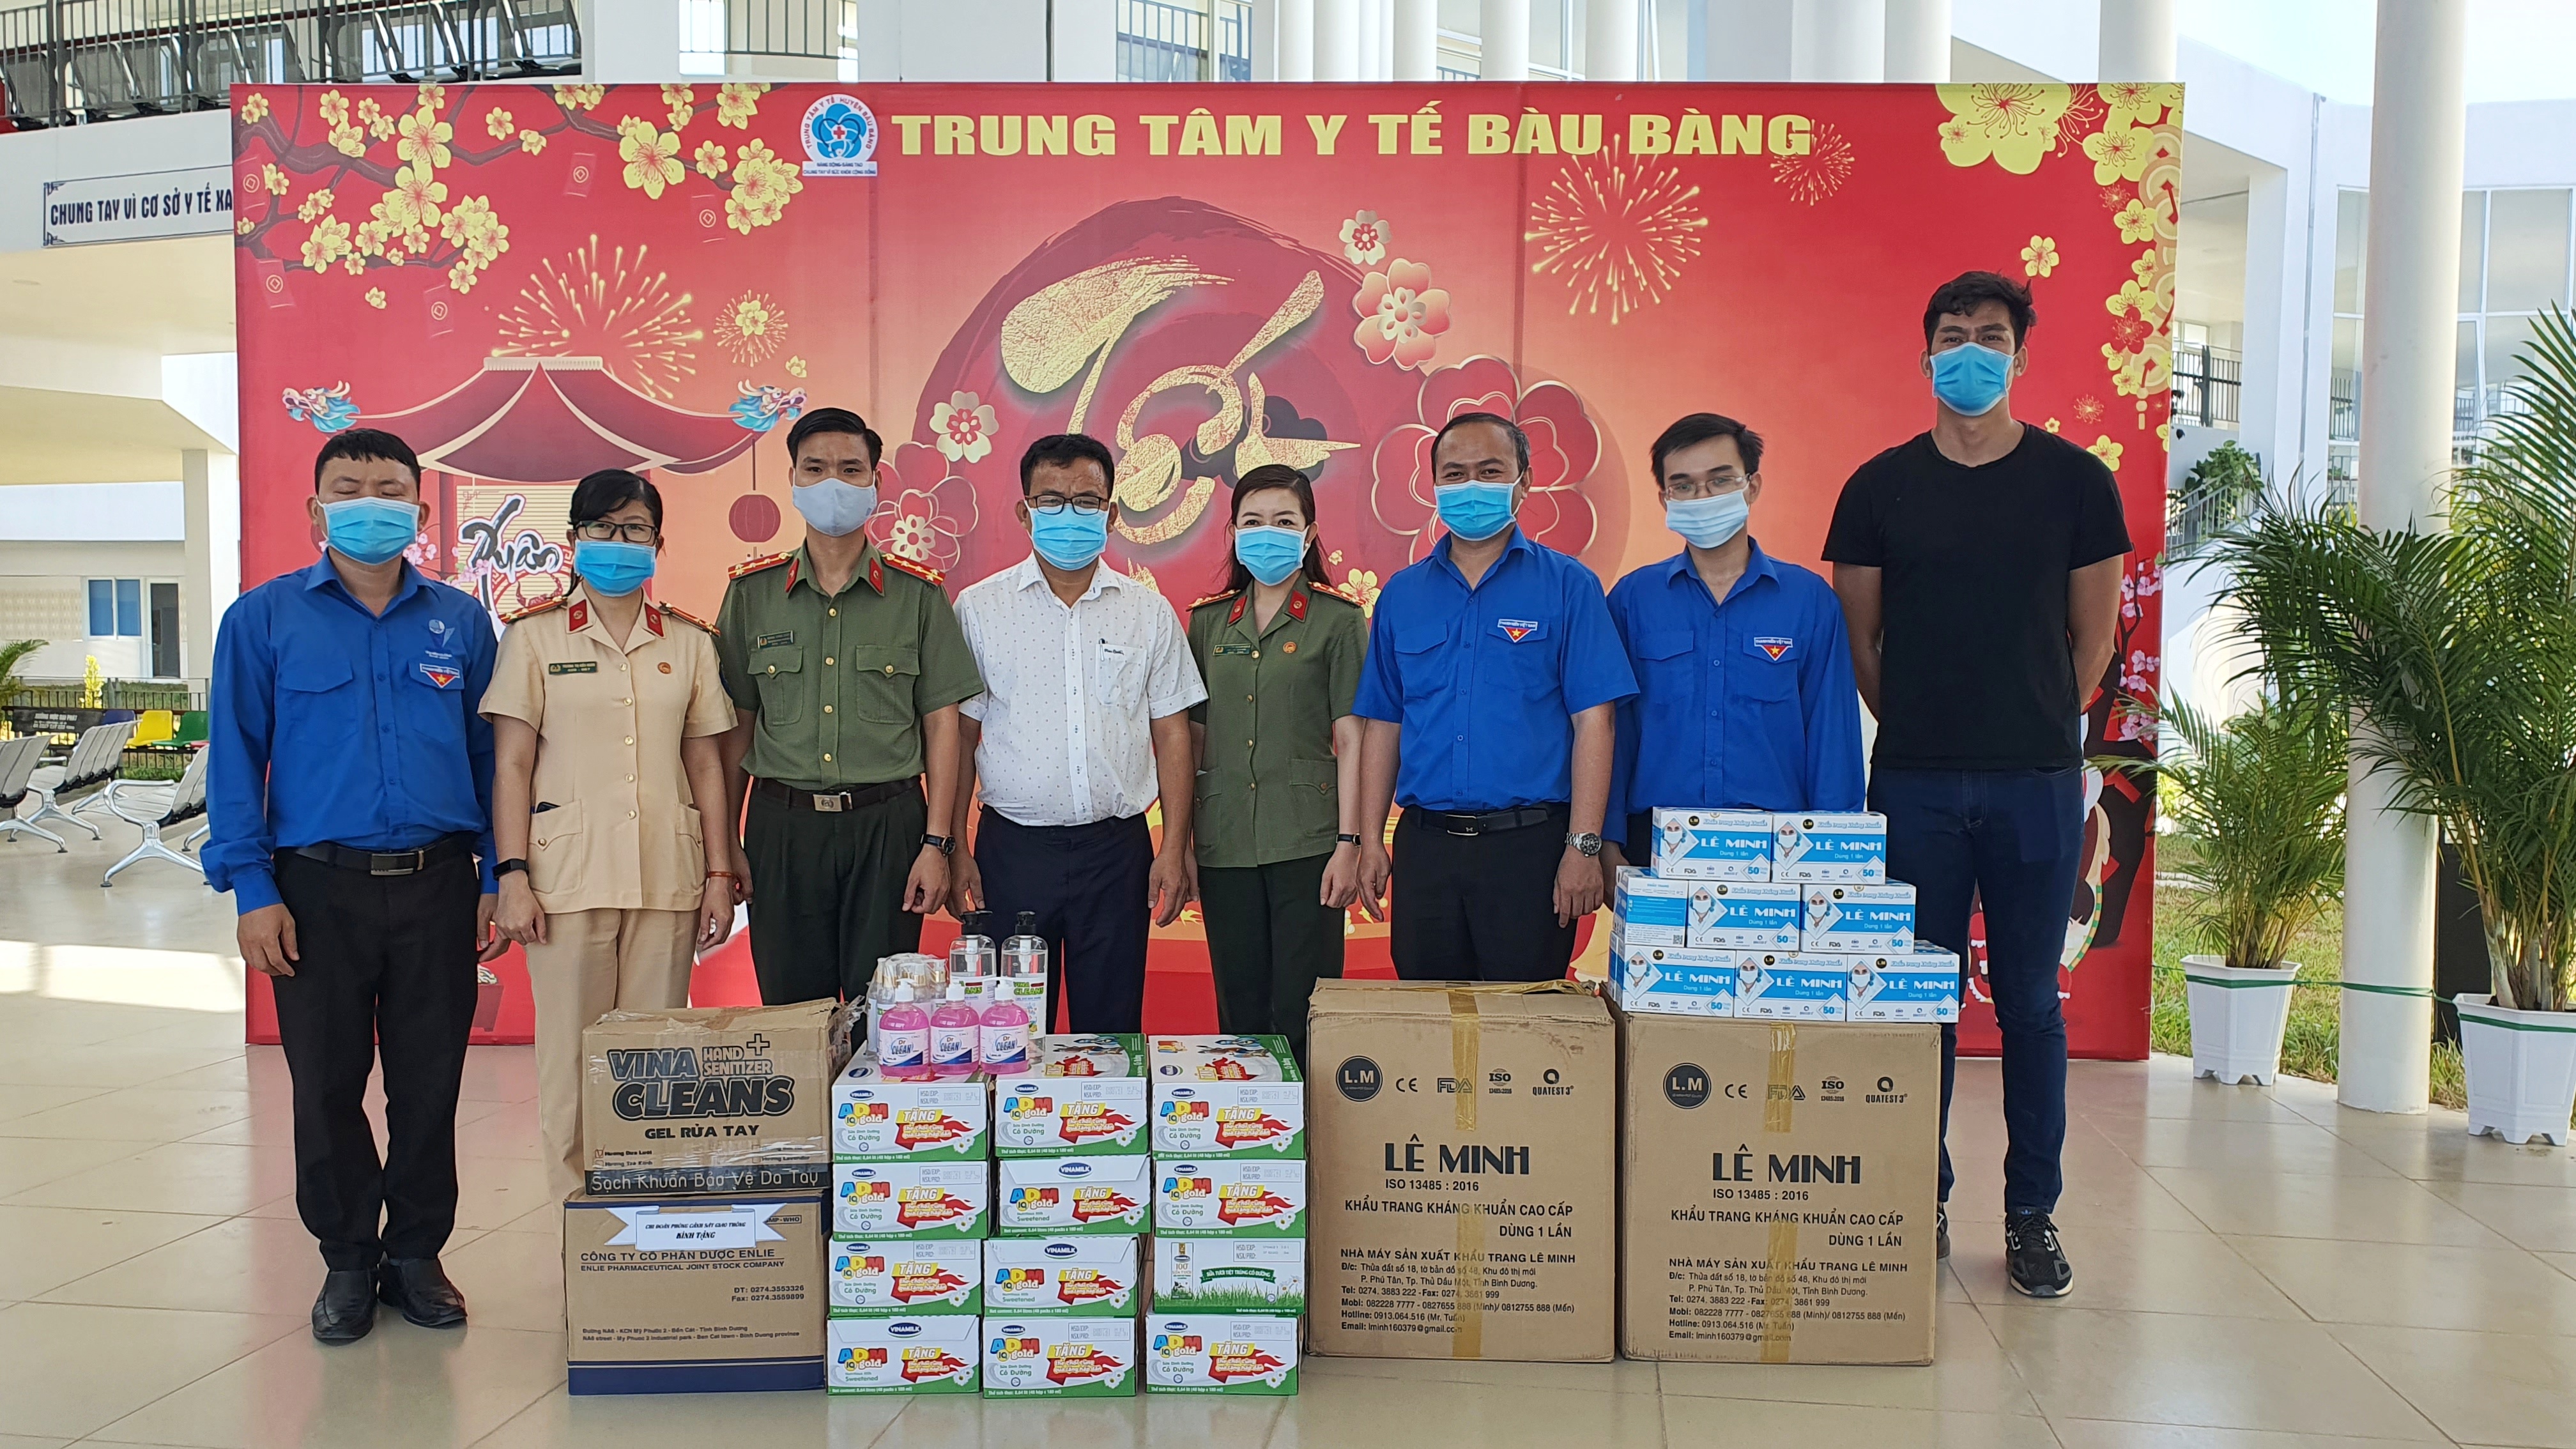 Đoàn Công an tỉnh tổ chức thăm hỏi, động viên và tặng quà hỗ trợ các y bác sỹ và các chiến sỹ đang thực hiện nhiệm vụ phòng, chống dịch bệnh tại khu cách ly Bàu Bàng